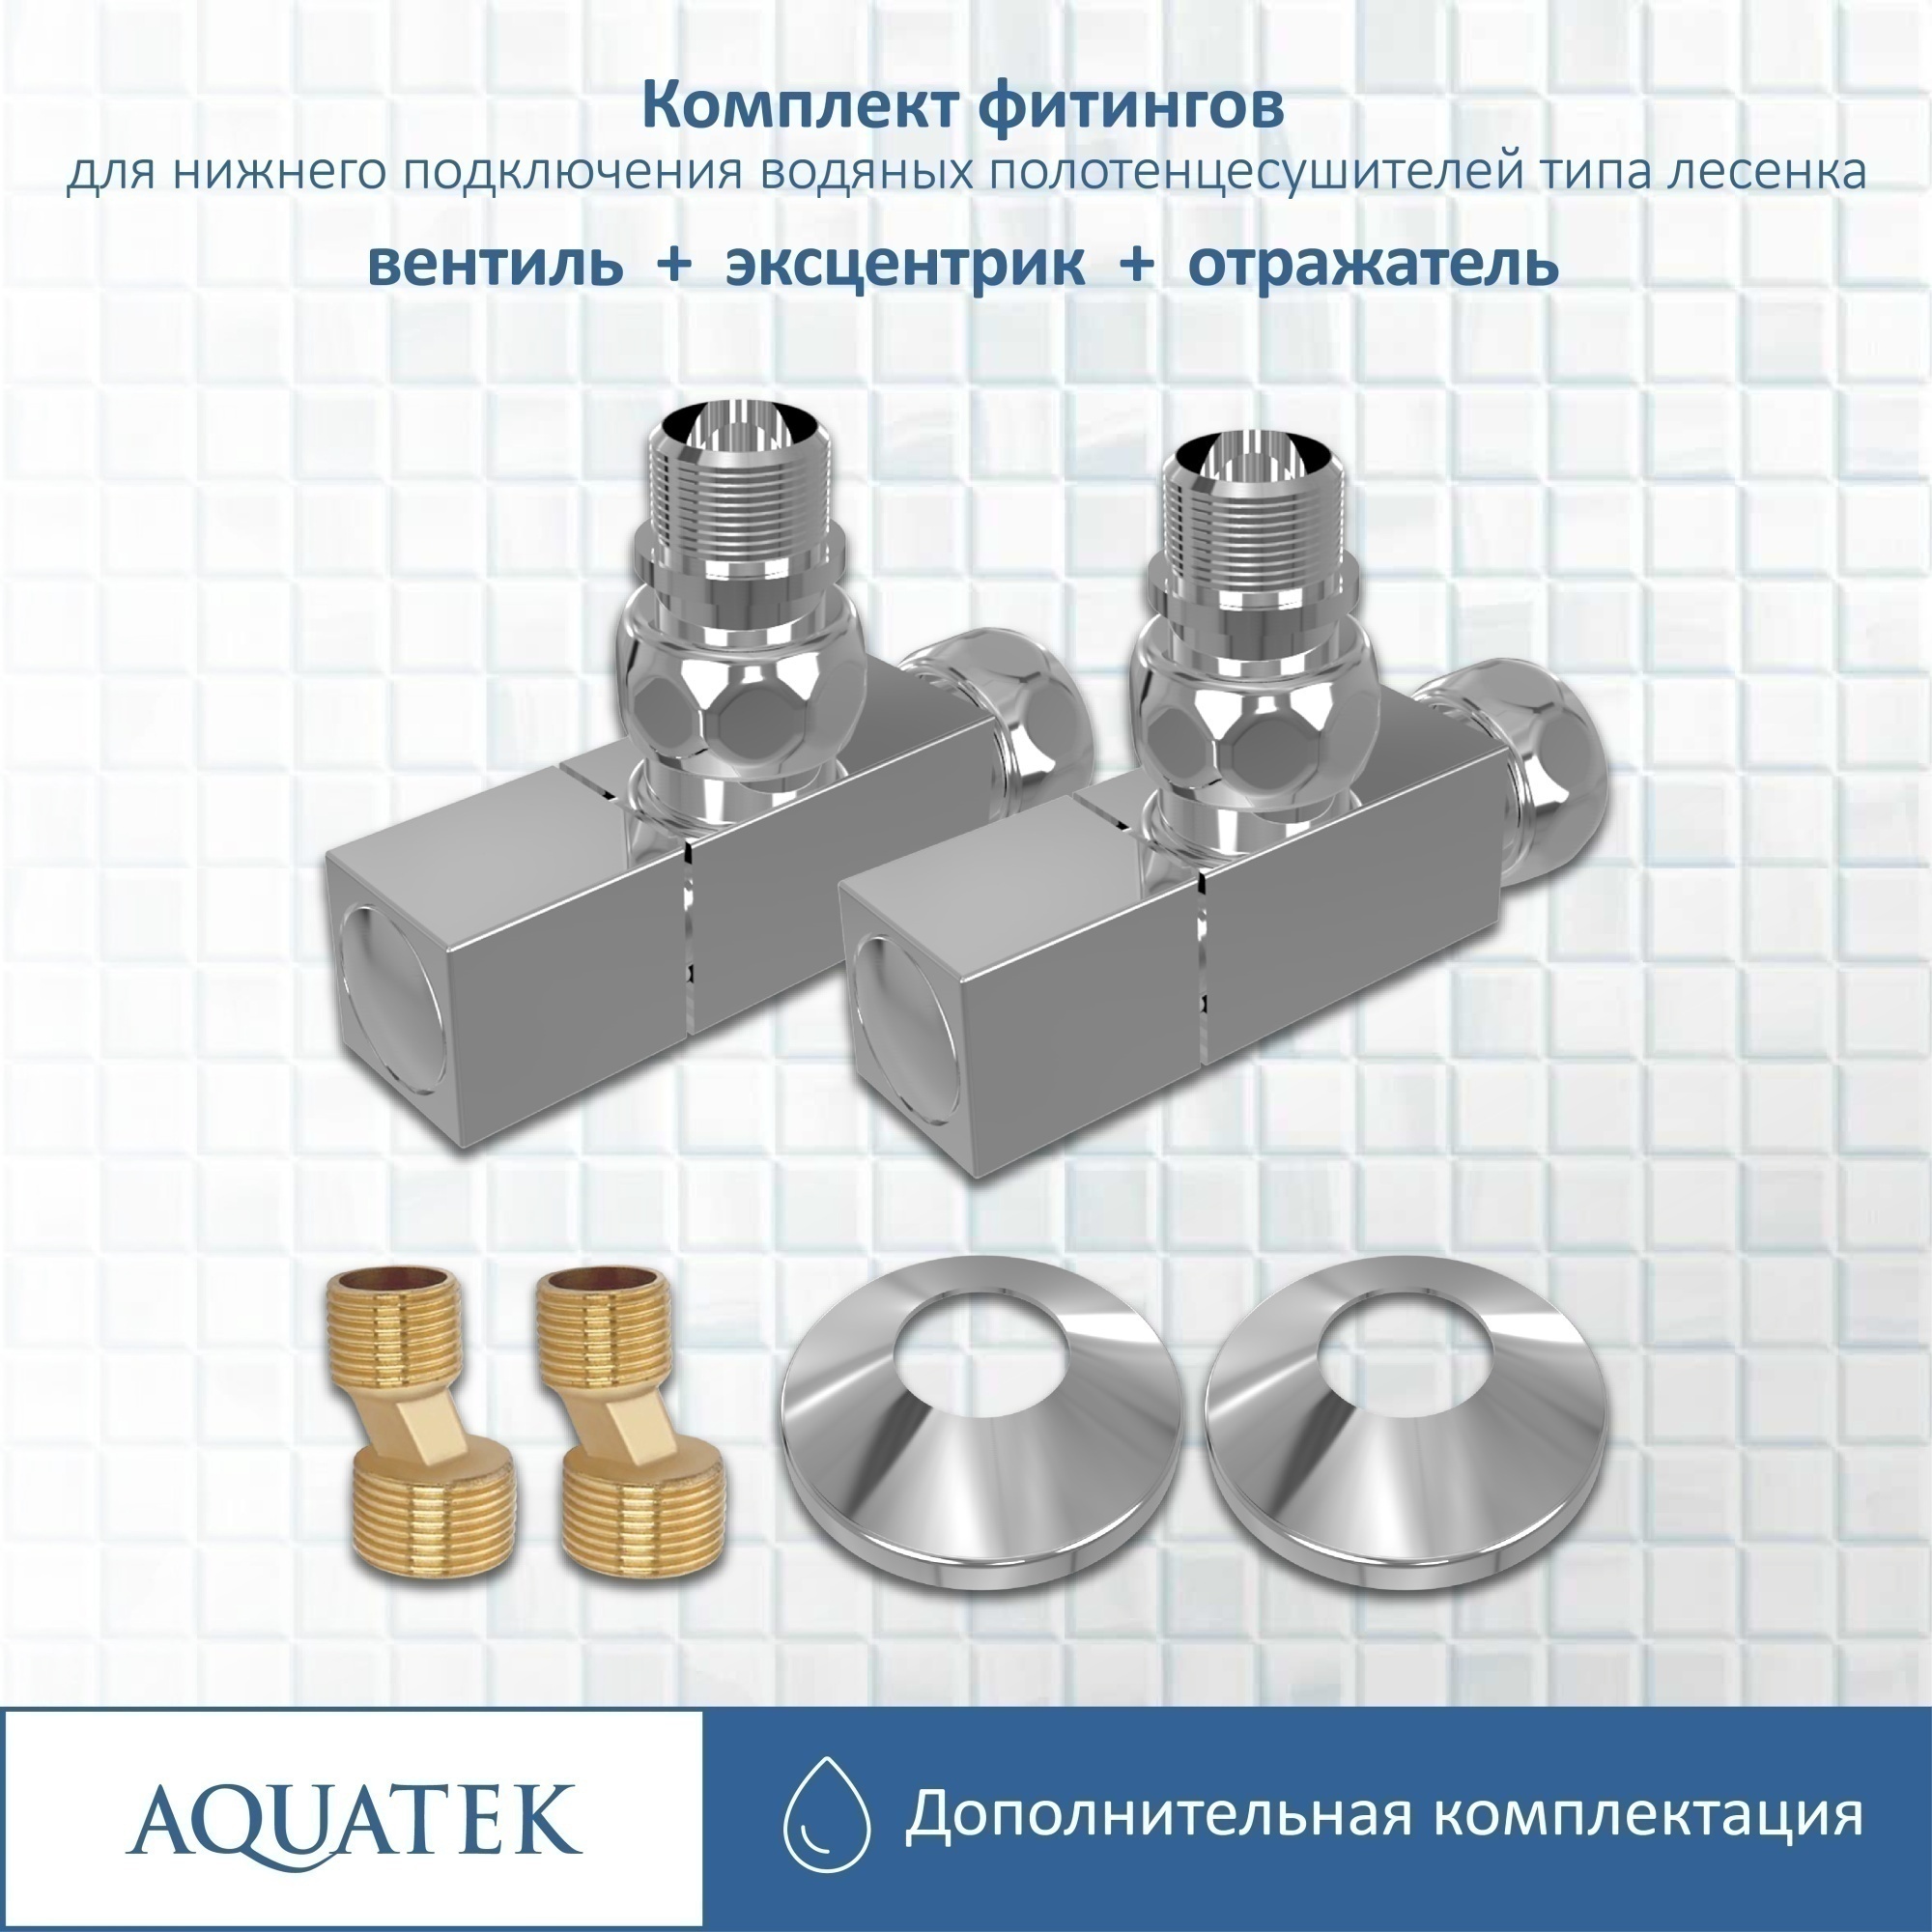 Комплект фитингов для нижнего подключения водяных полотенцесушителей Aquatek AQ 2020CH